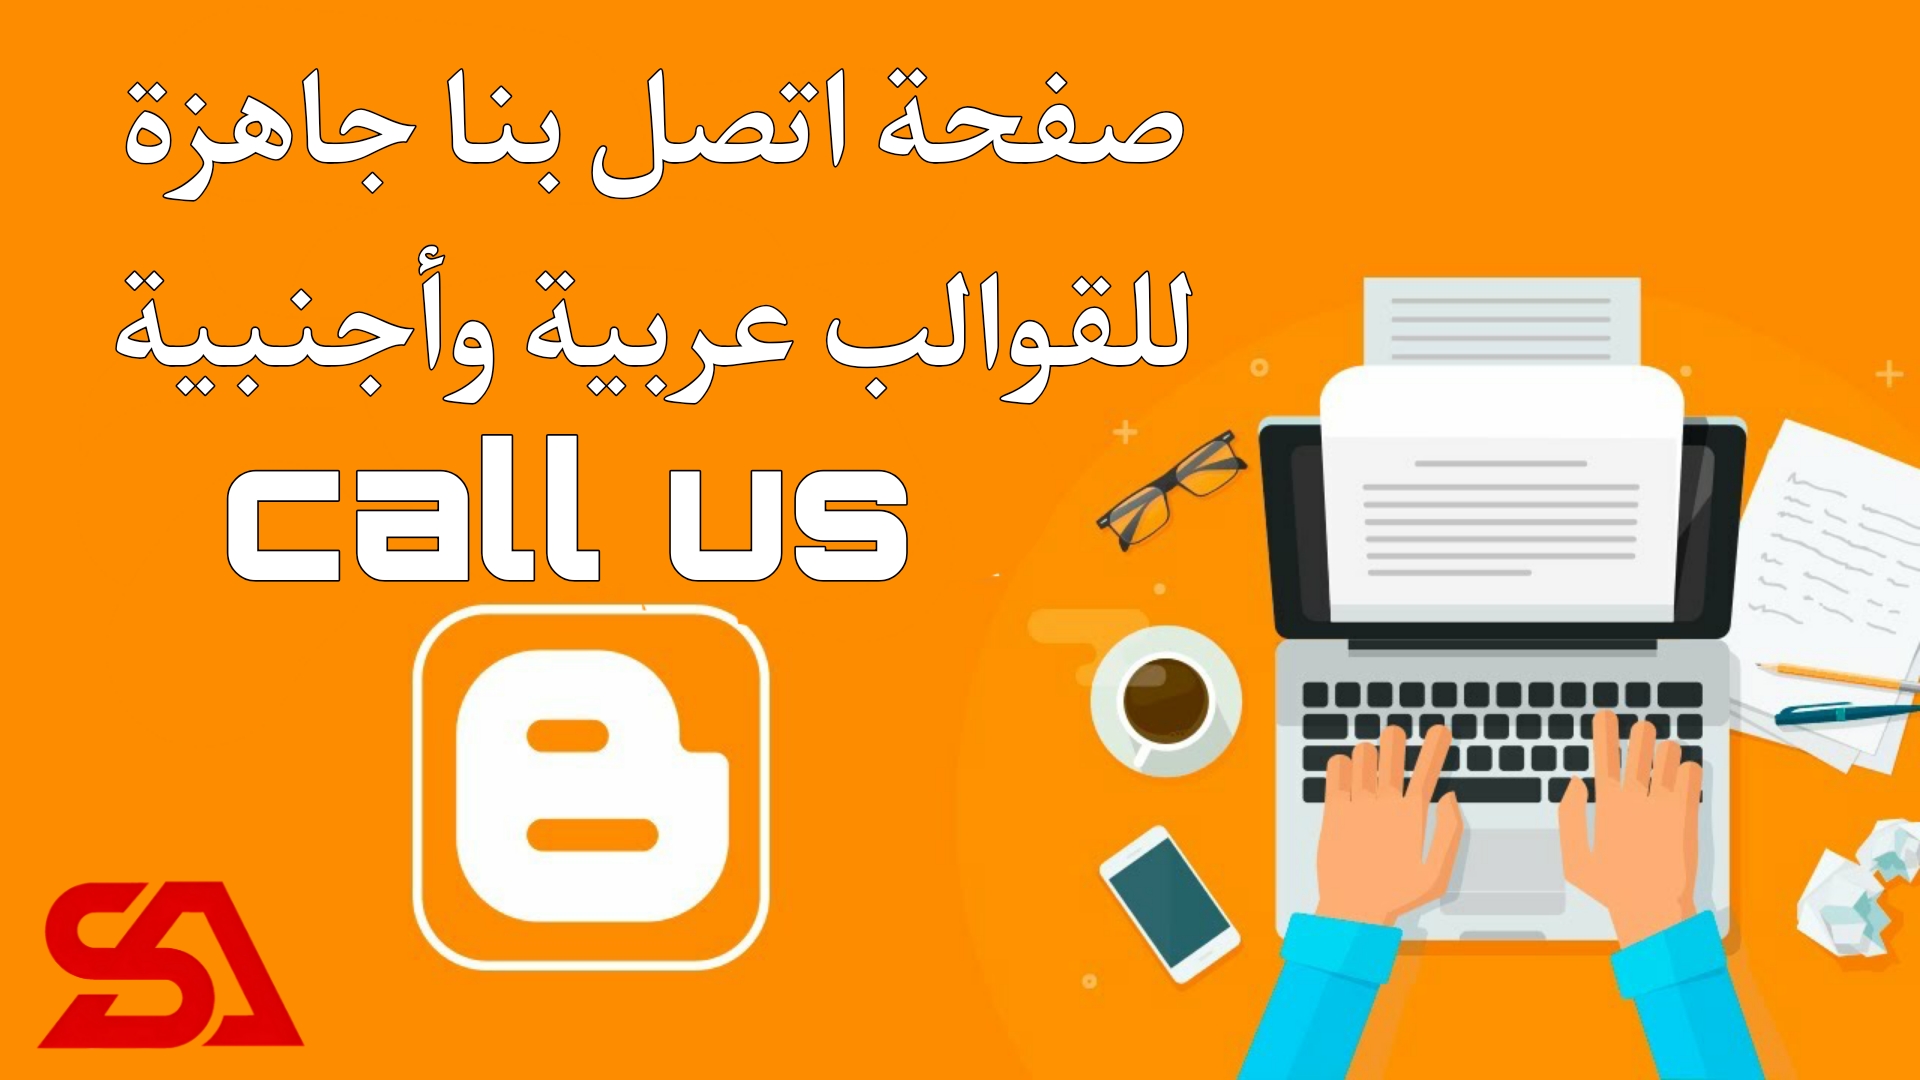 صفحة اتصل بنا جاهزة تعمل على مدونة انجليزية وعربية